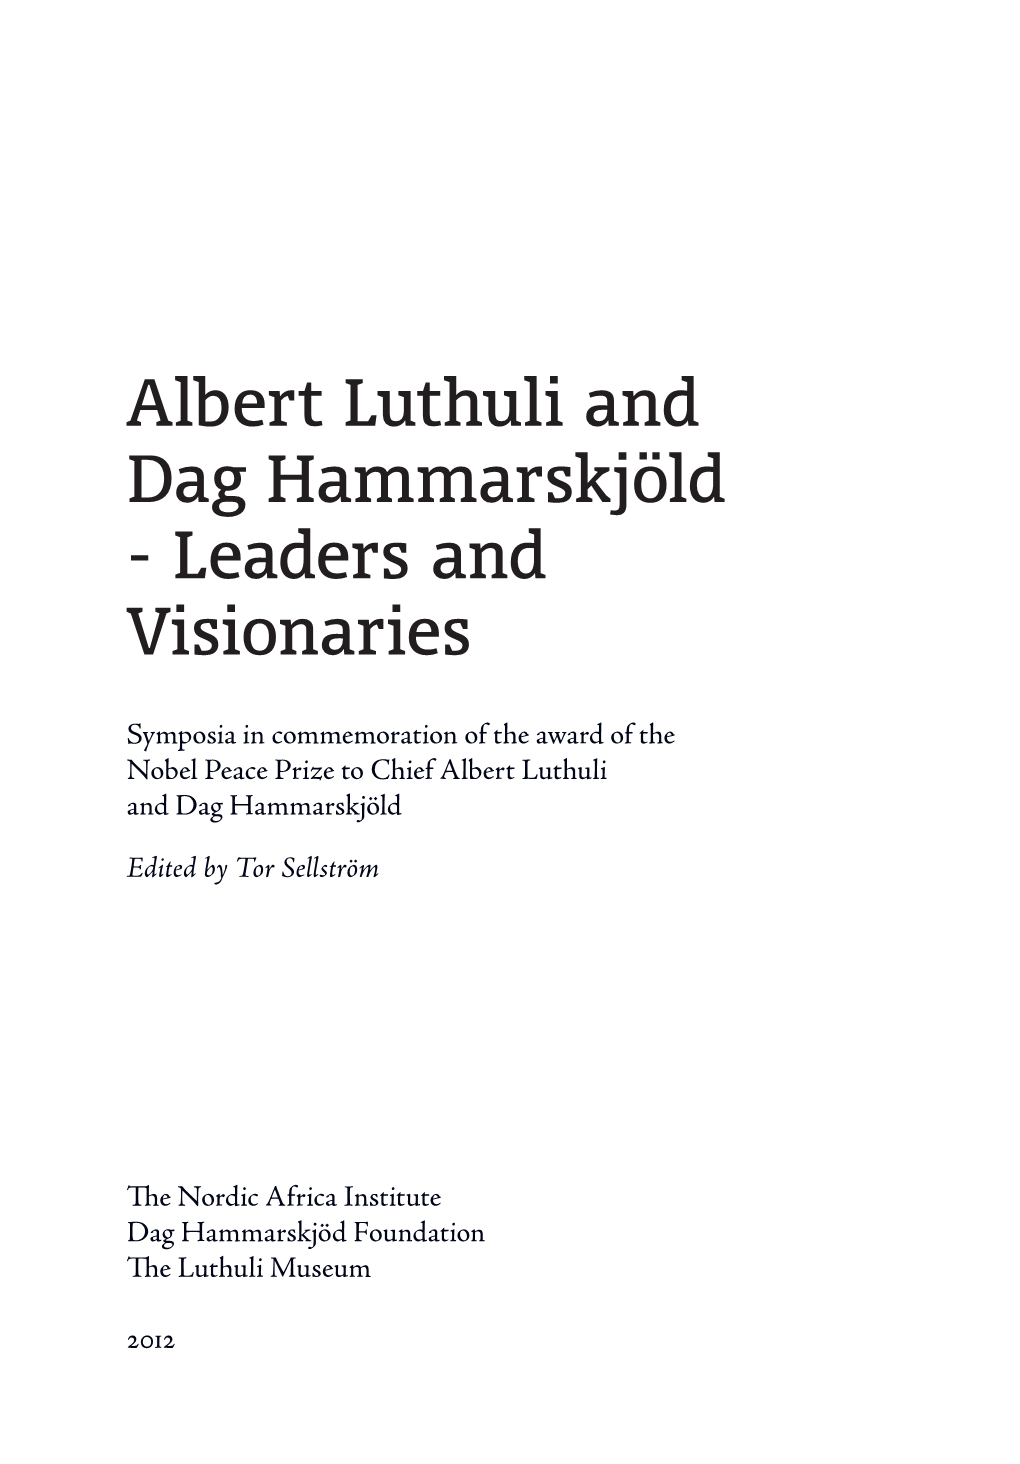 Albert Luthuli and Dag Hammarskjöld - Leaders and Visionaries